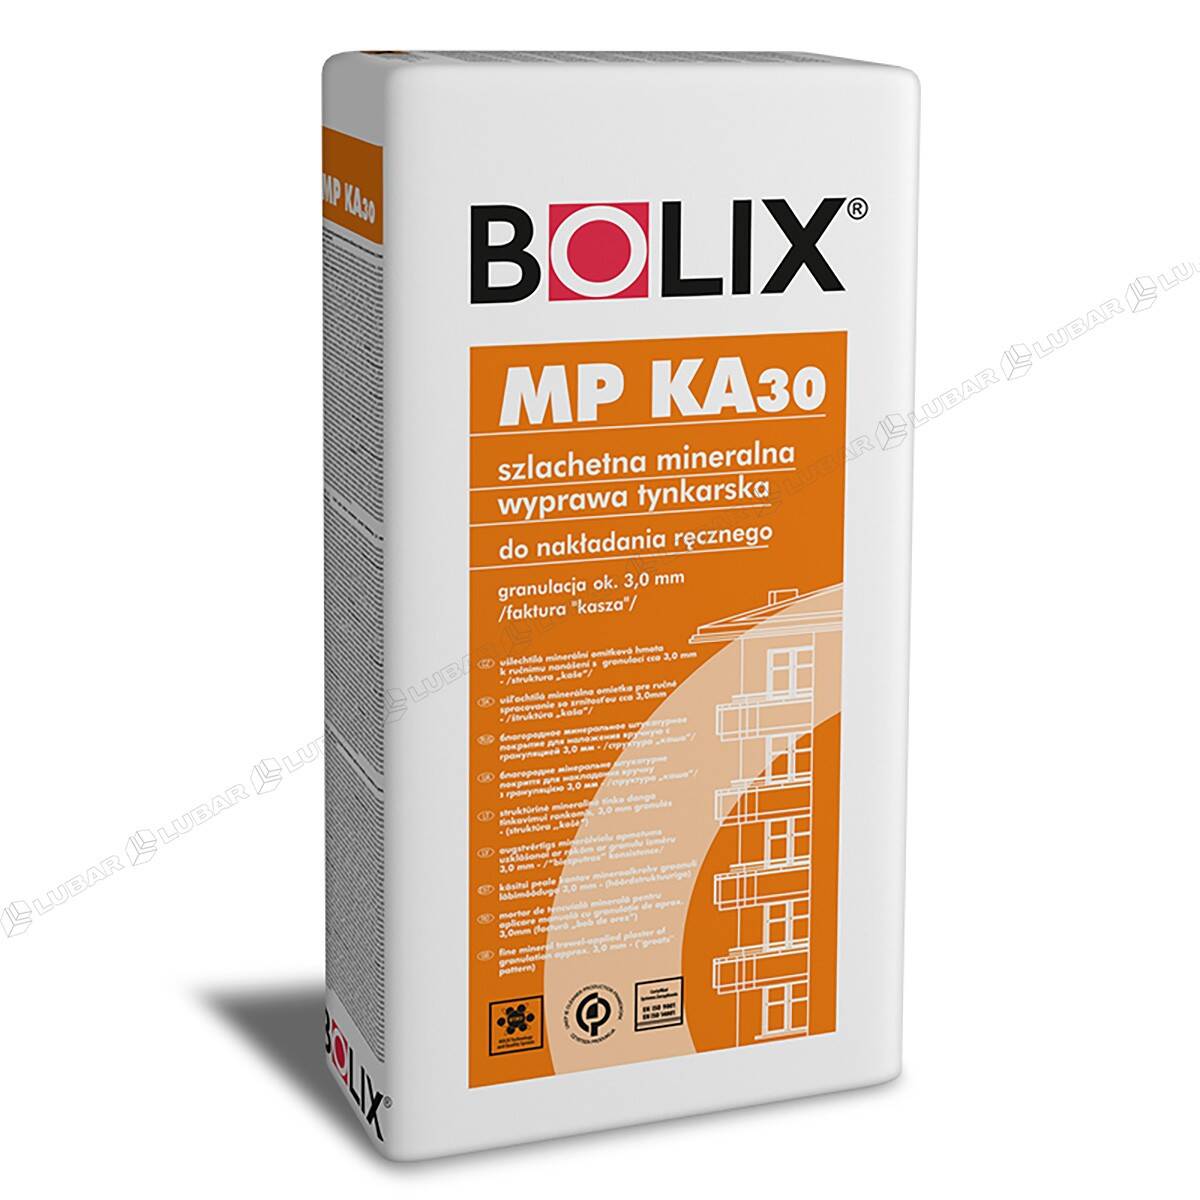 BOLIX MP KA 30mm Tynk mineralny cienkowarstwowy baranek 25kg